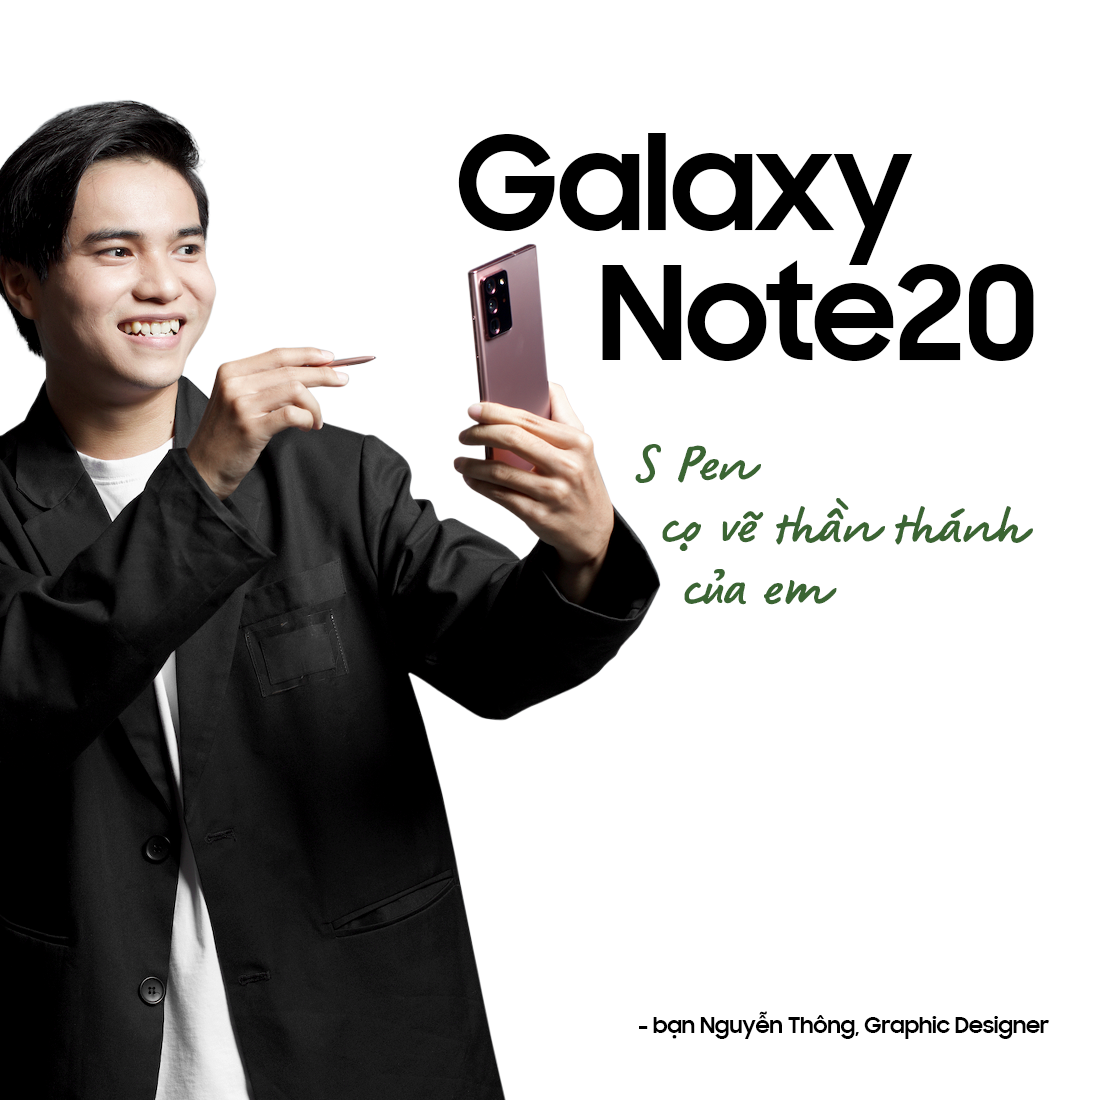 “Quyền năng” từ Galaxy Note trong mắt người dùng - ảnh 2